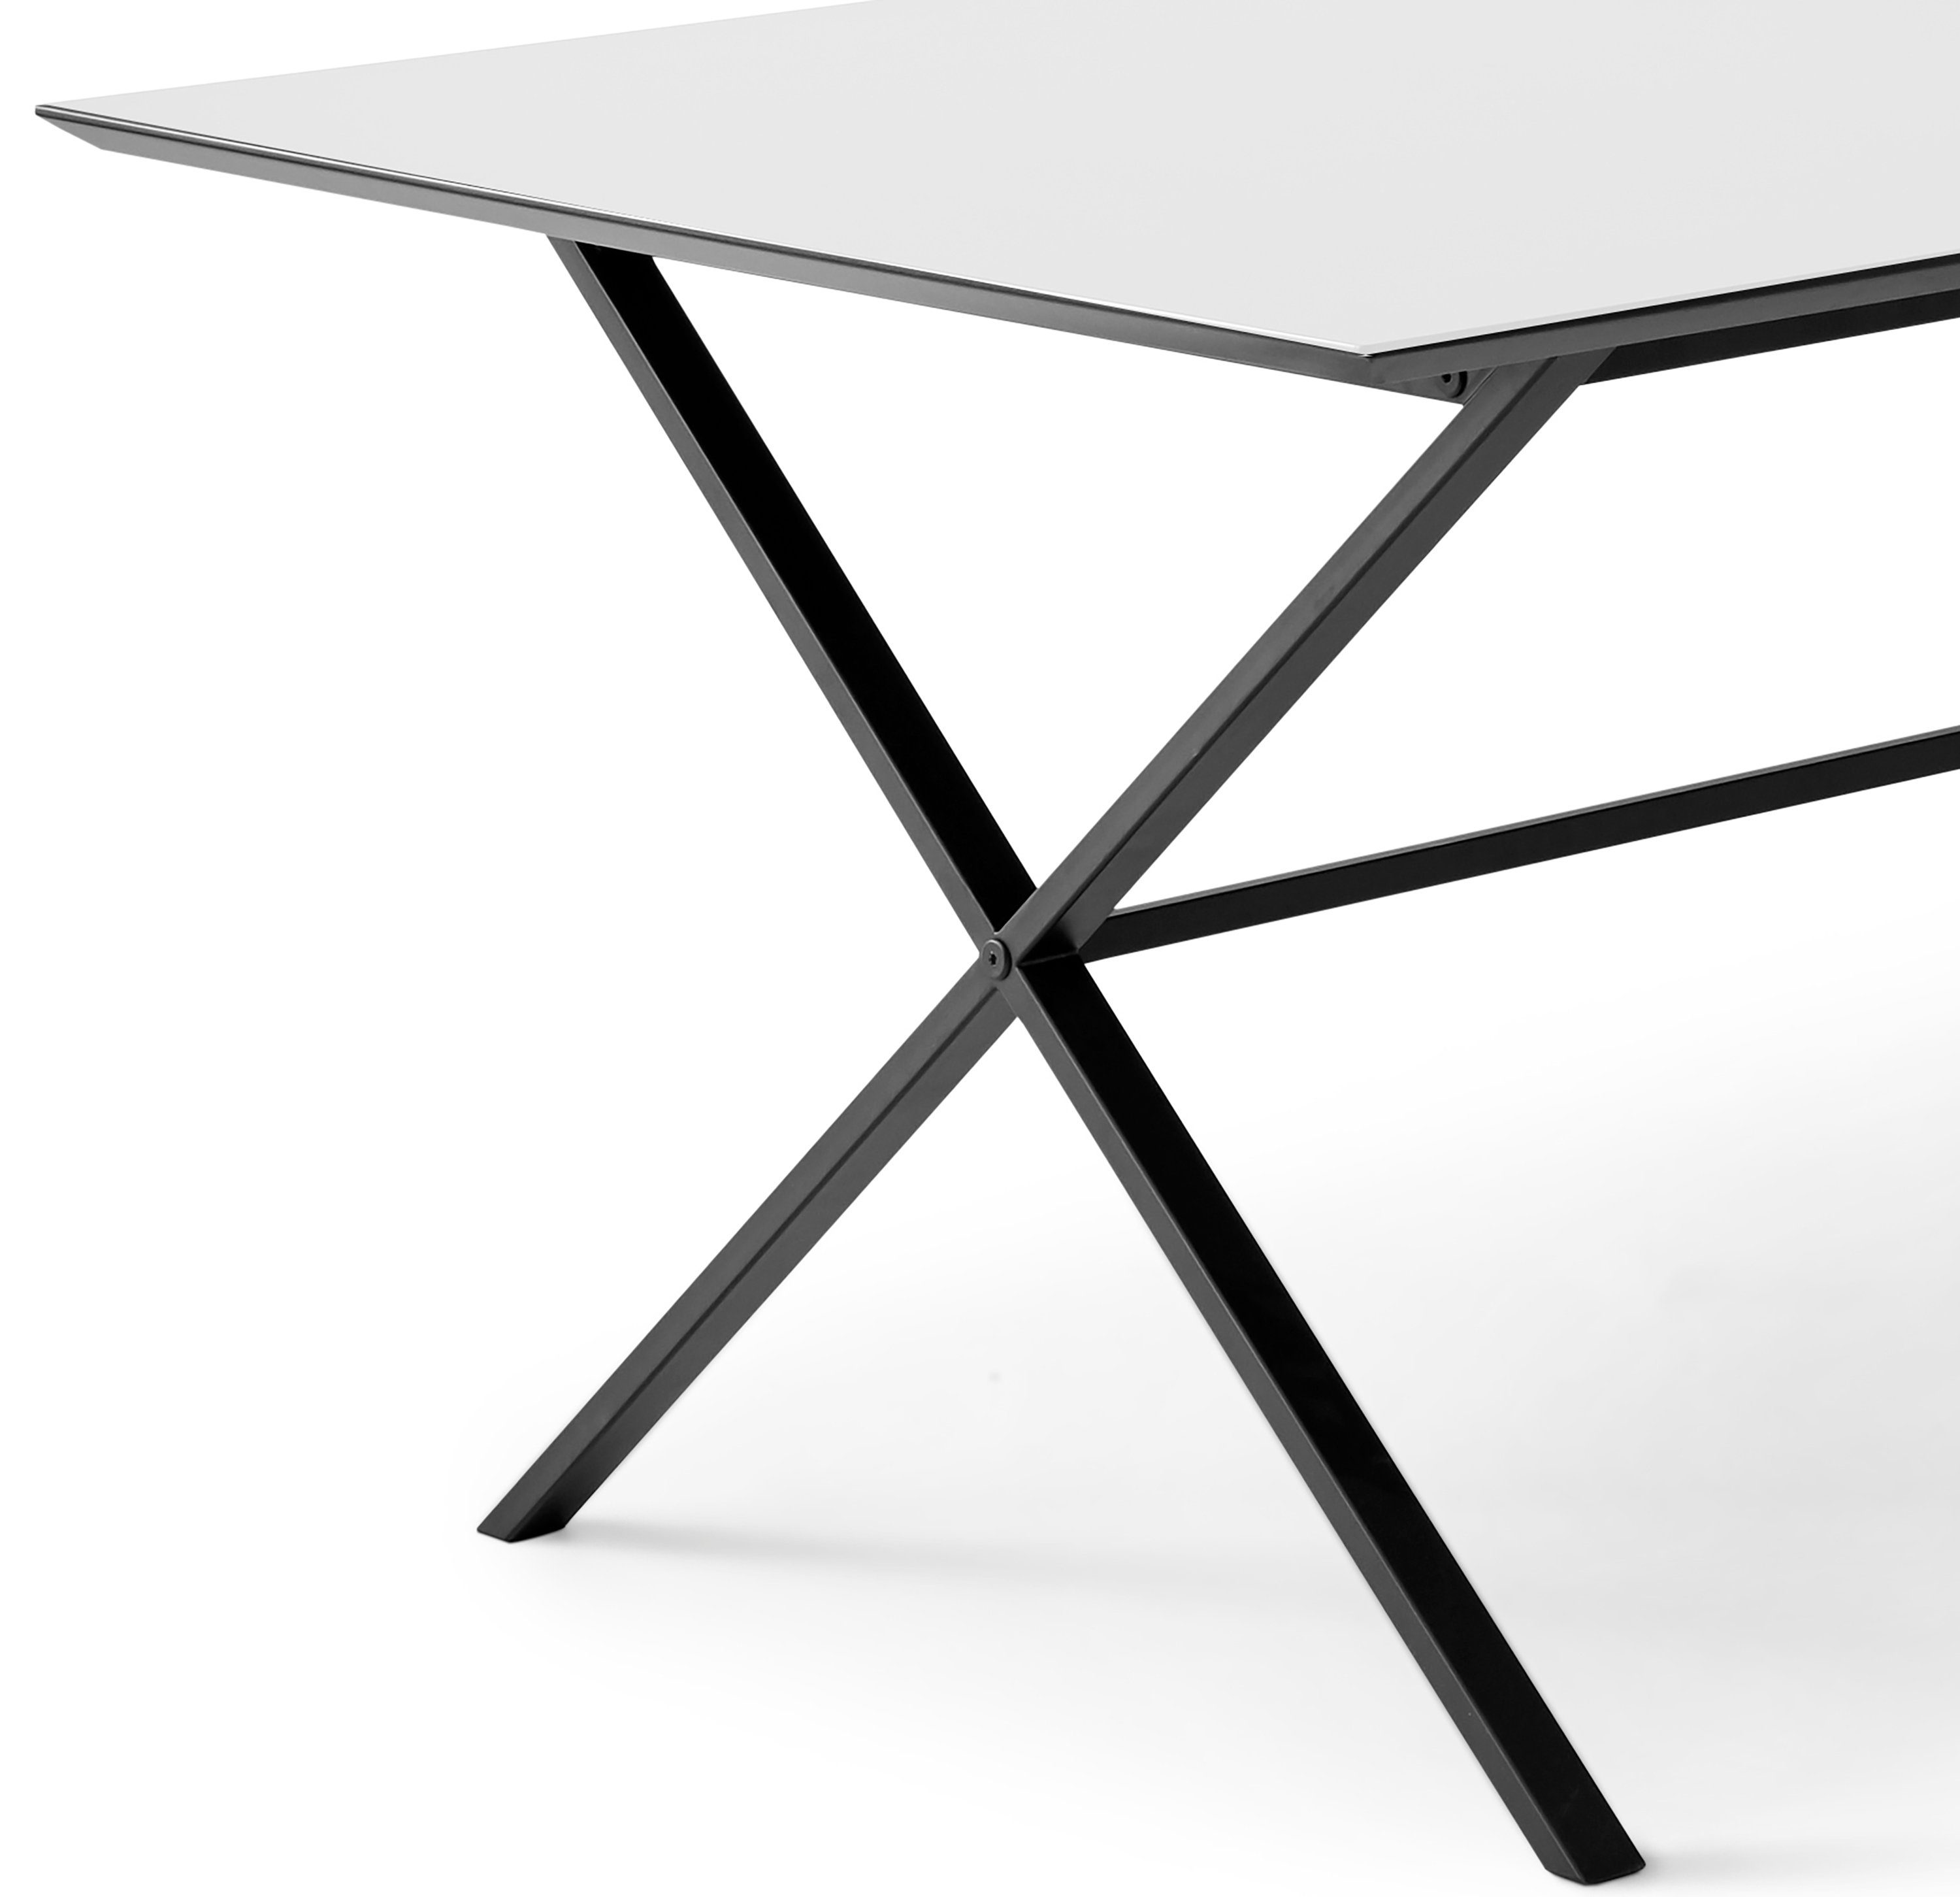 Furniture Esstisch Hammel by rechteckige Tischplatte gekreuztes Meza Hammel, Weiß MDF, Metallgestell